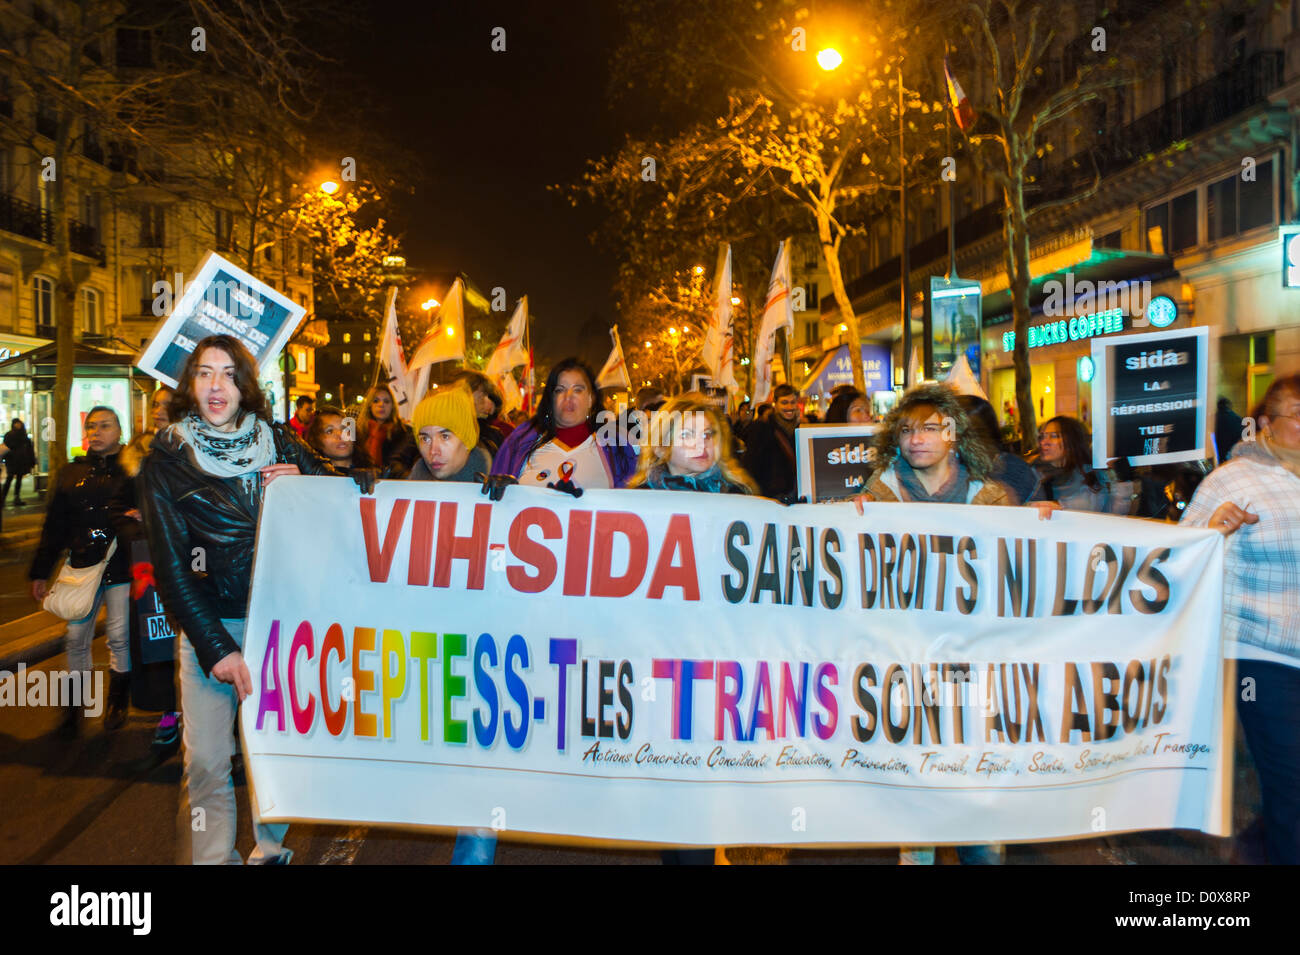 Paris, France, AIDS Trans activistes de Accepcess-T, une manifestation publique de l'Association des droits transgenres, pour décembre 1, événements de la Journée mondiale du SIDA, personnes trans portant des signes de protestation dans la rue la nuit, campagne d'aides, homophobie transphobie, soutien transgenre Banque D'Images